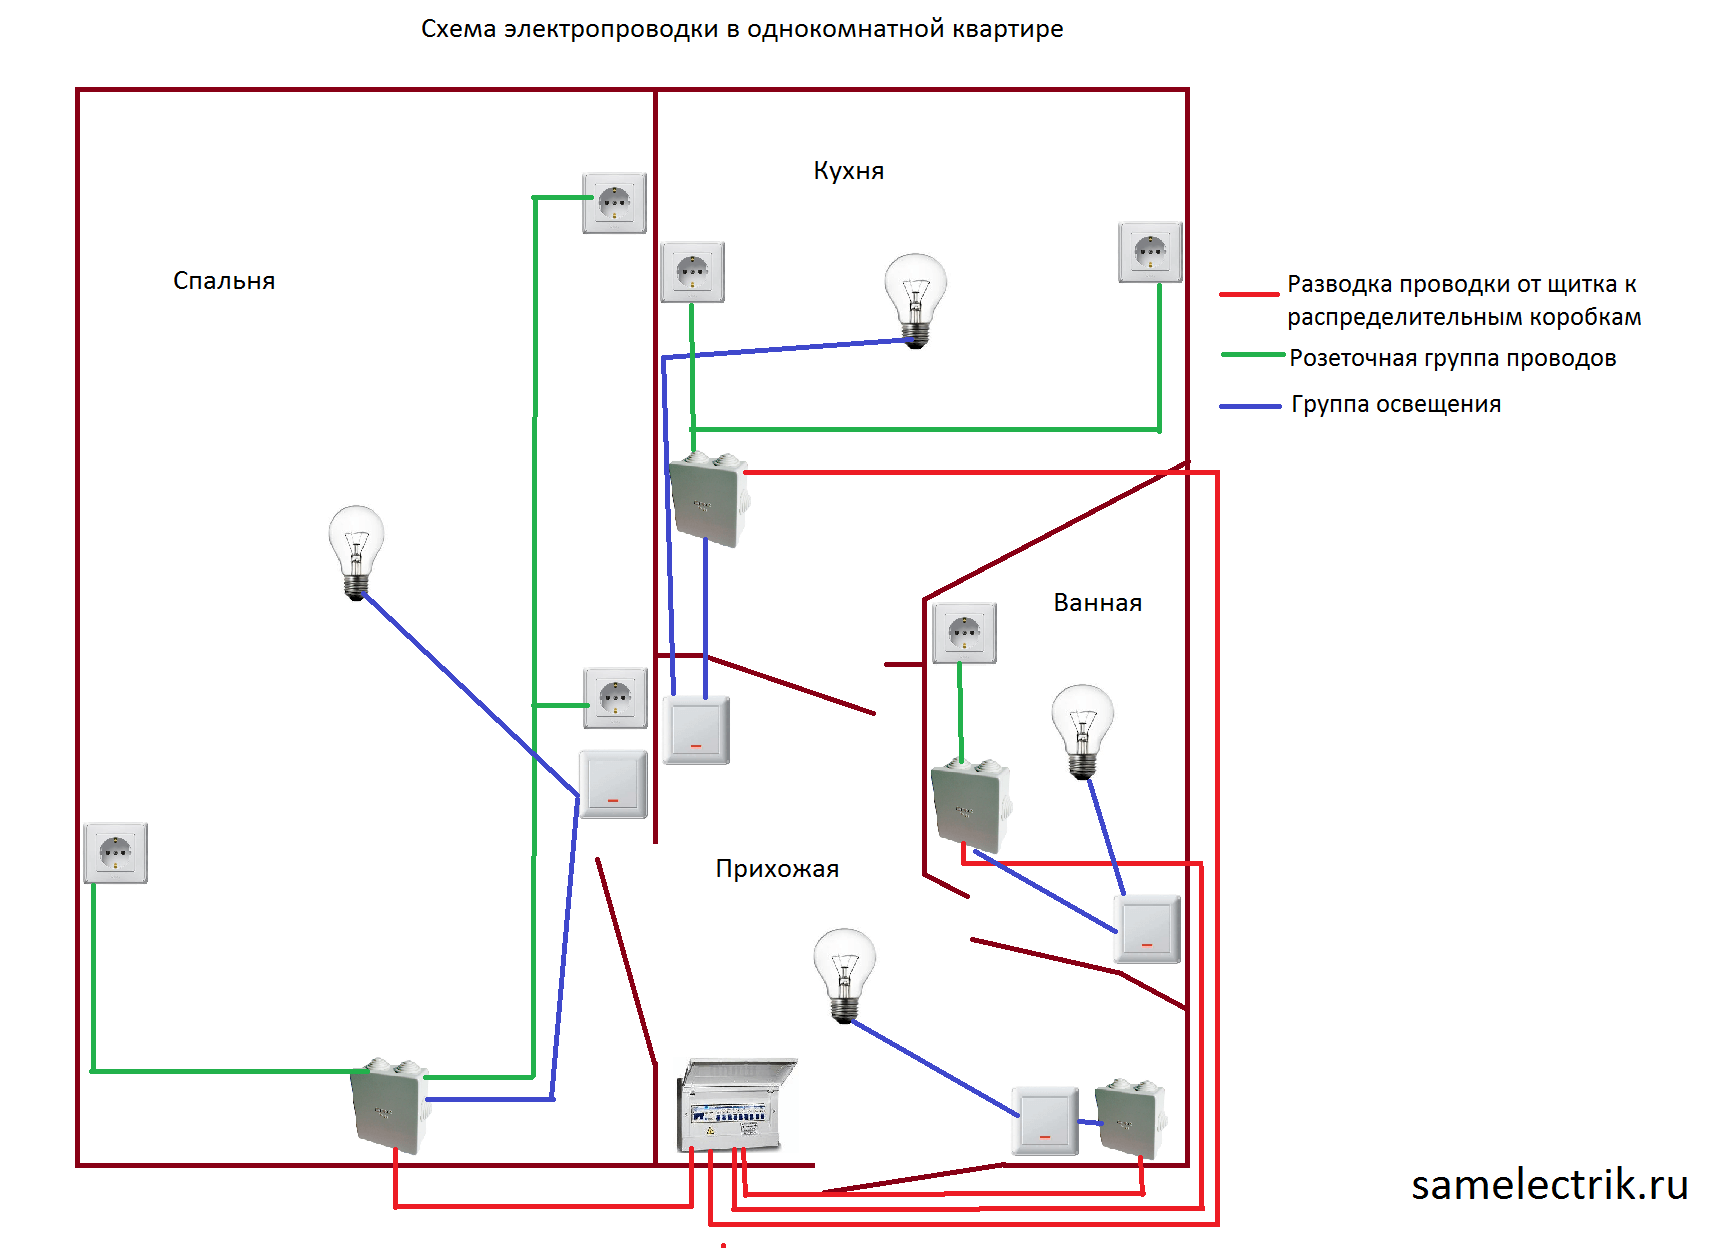 Как самостоятельно поменять электропроводку в квартире